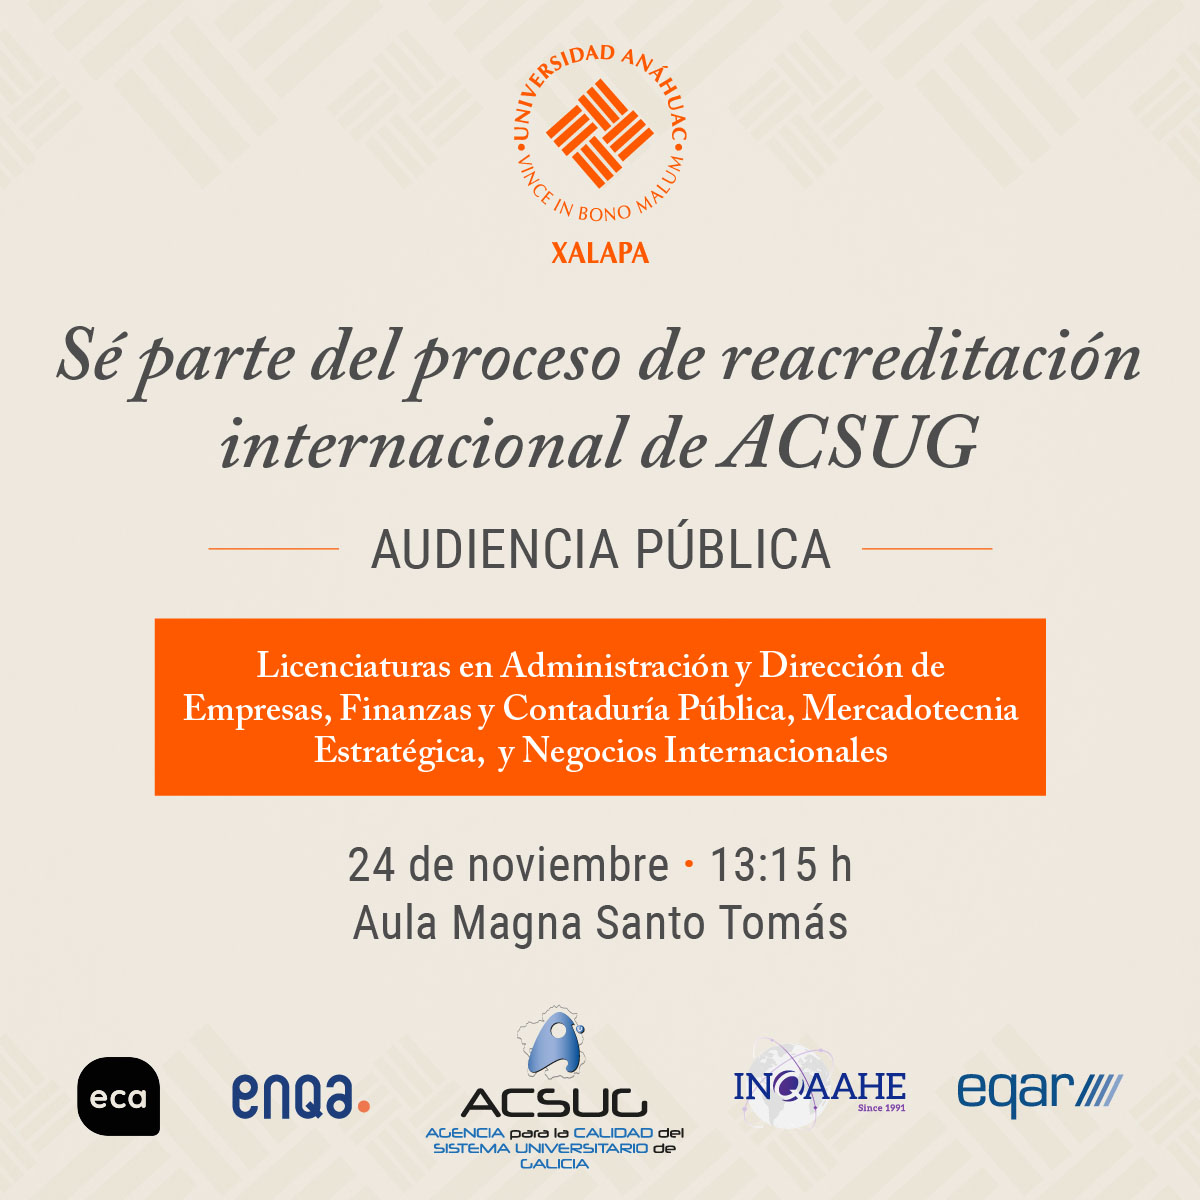 Reacreditación Internacional ACSUG: Audiencia Pública